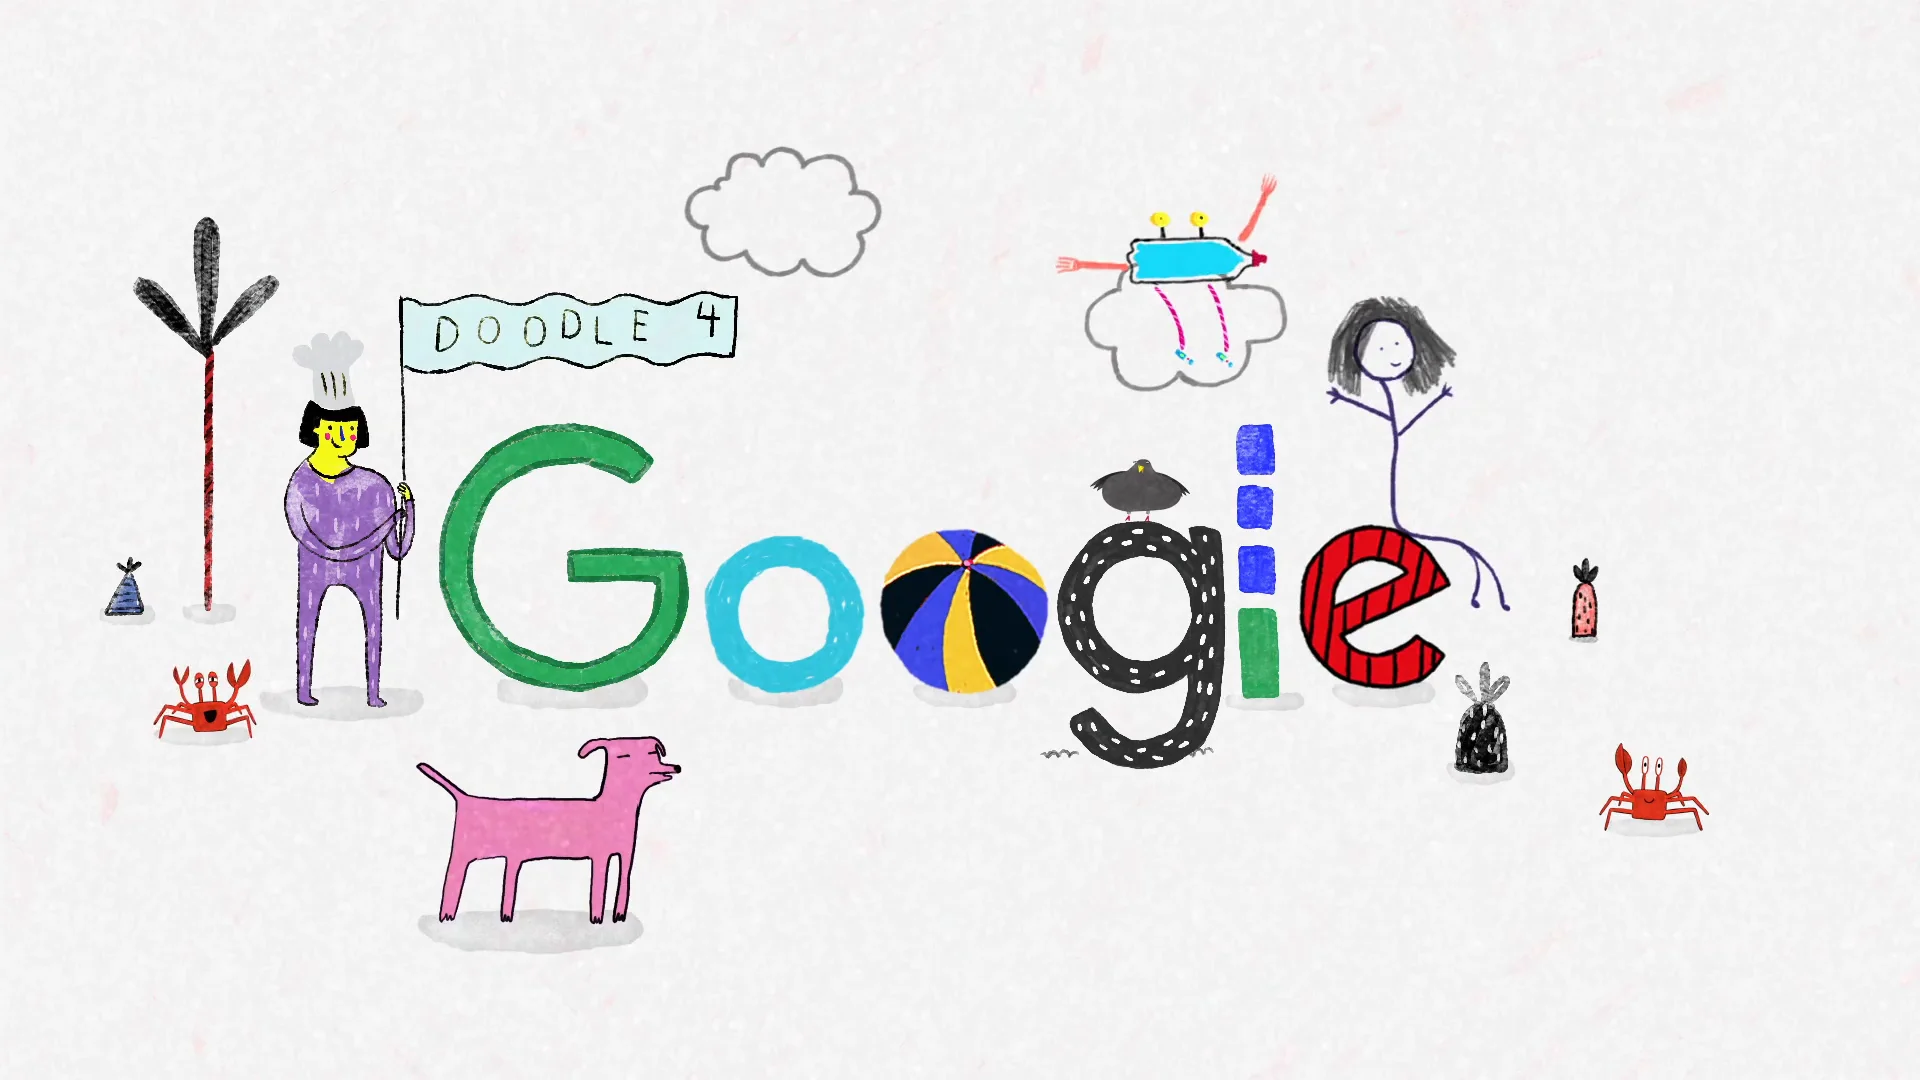 Google homenageia criador de 'Fantasia' com Doodle que faz música - Ciência  & Tecnologia